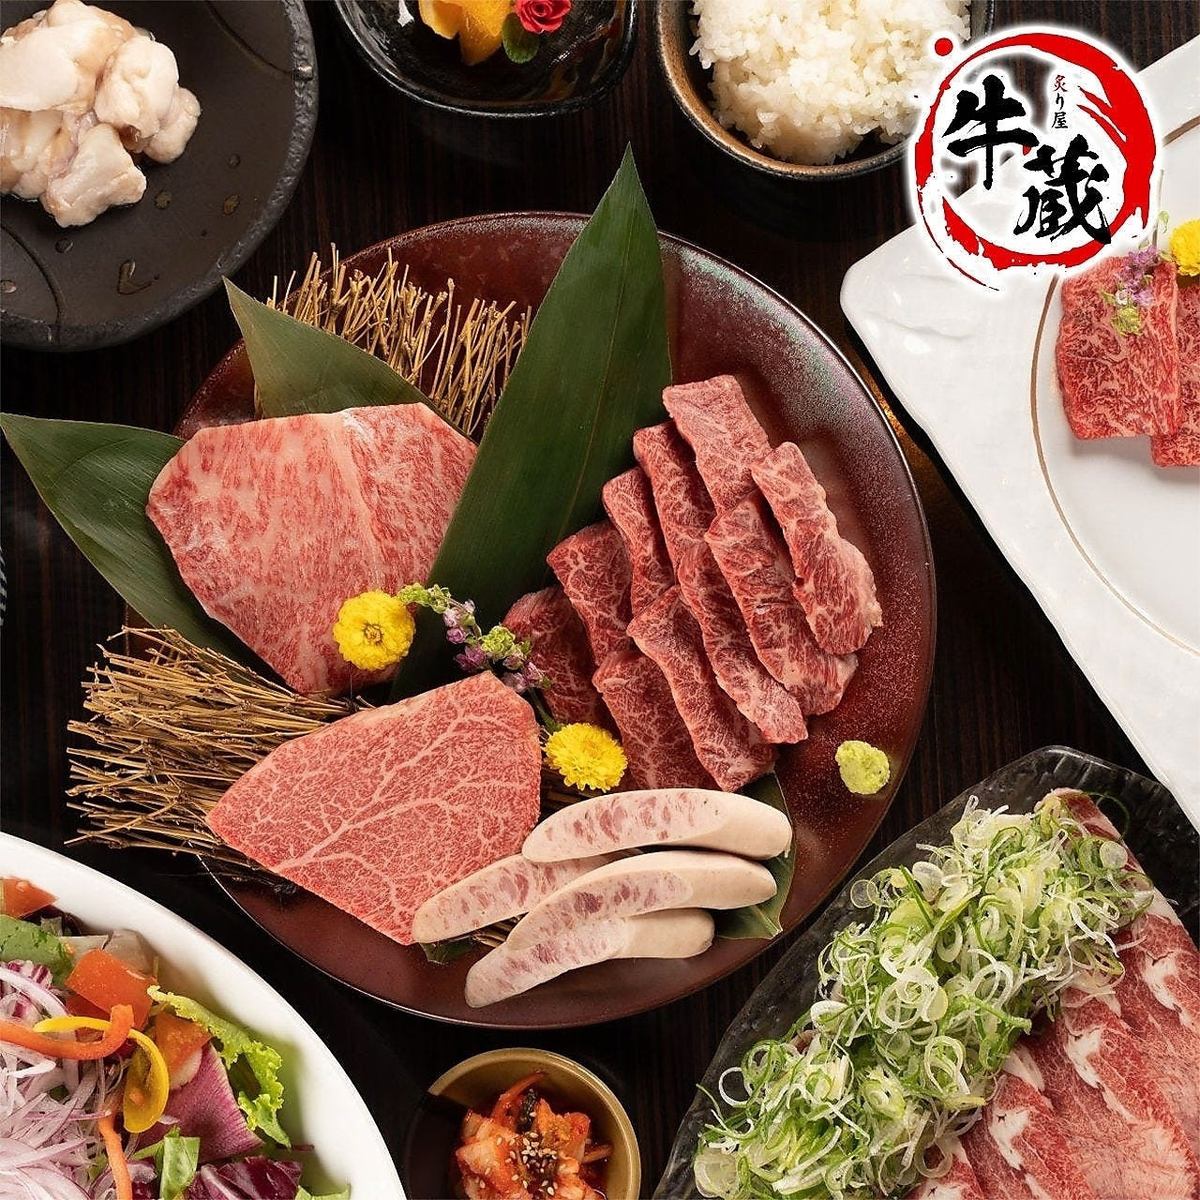 位於市中心的現代日式烤肉店【Gyuzo】請您的愛人吃到最好的宮崎牛肉...☆